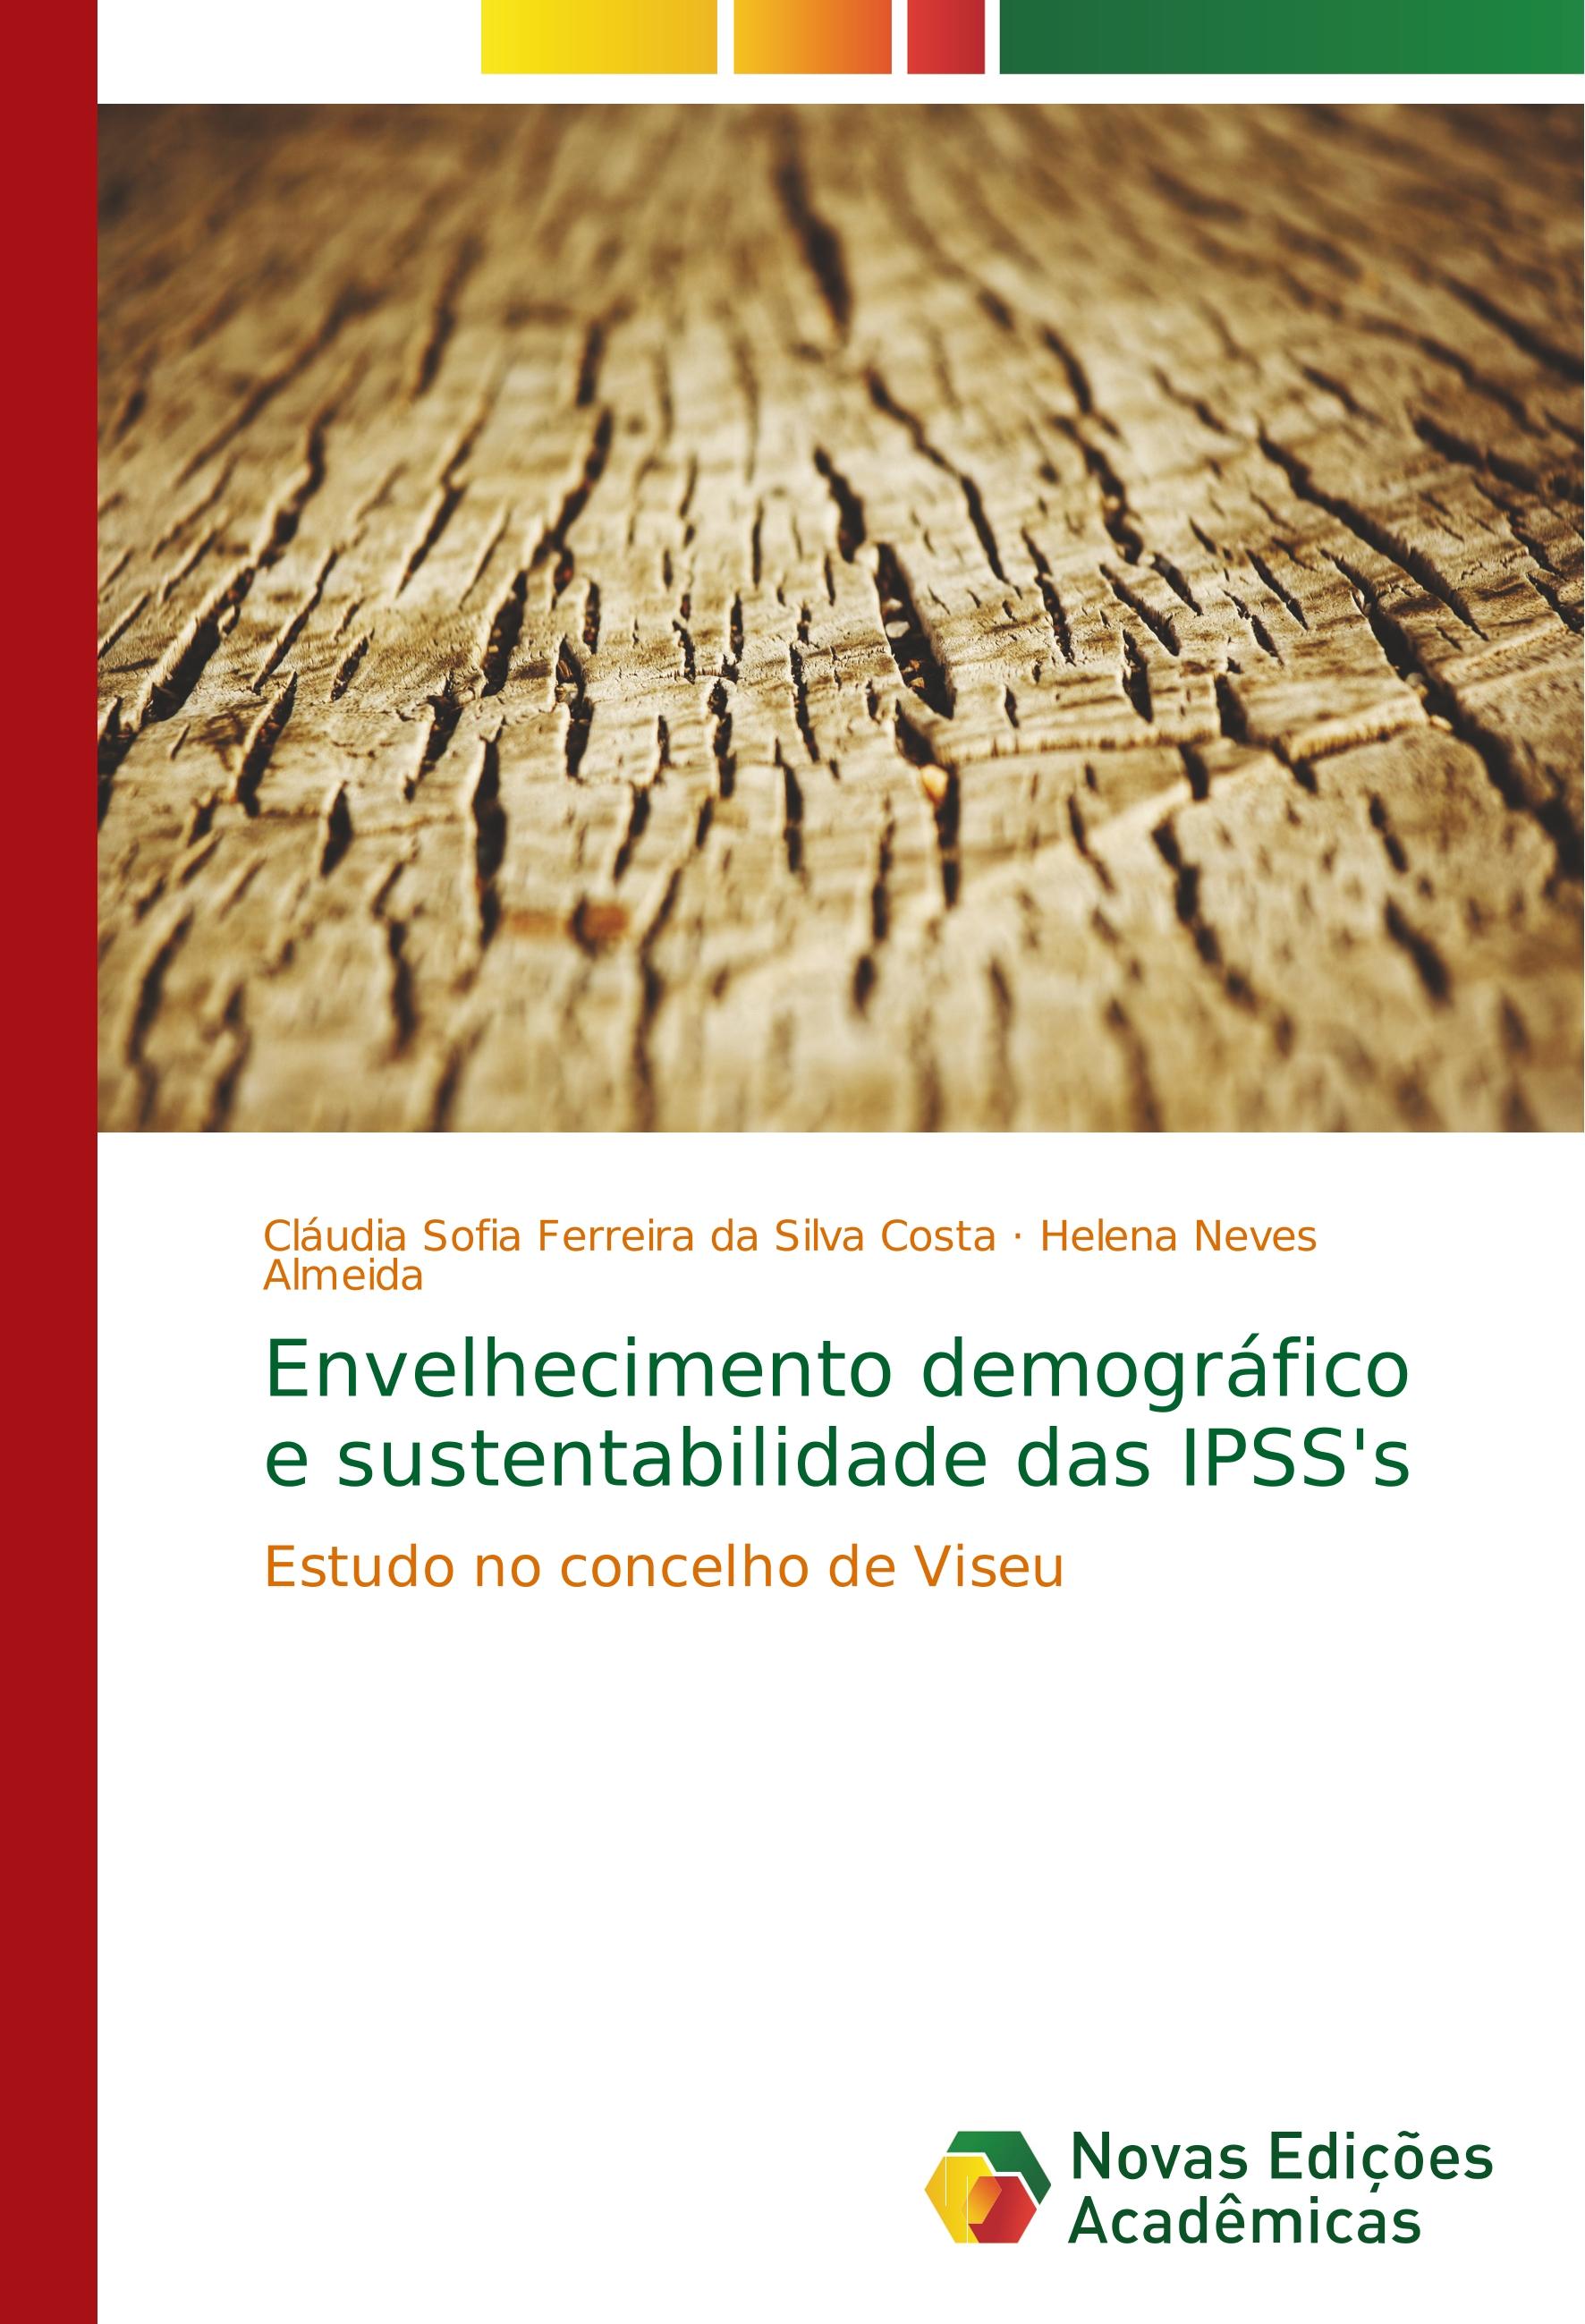 Envelhecimento demográfico e sustentabilidade das IPSS s - Cláudia Sofia Ferreira da Silva Costa Helena Neves Almeida